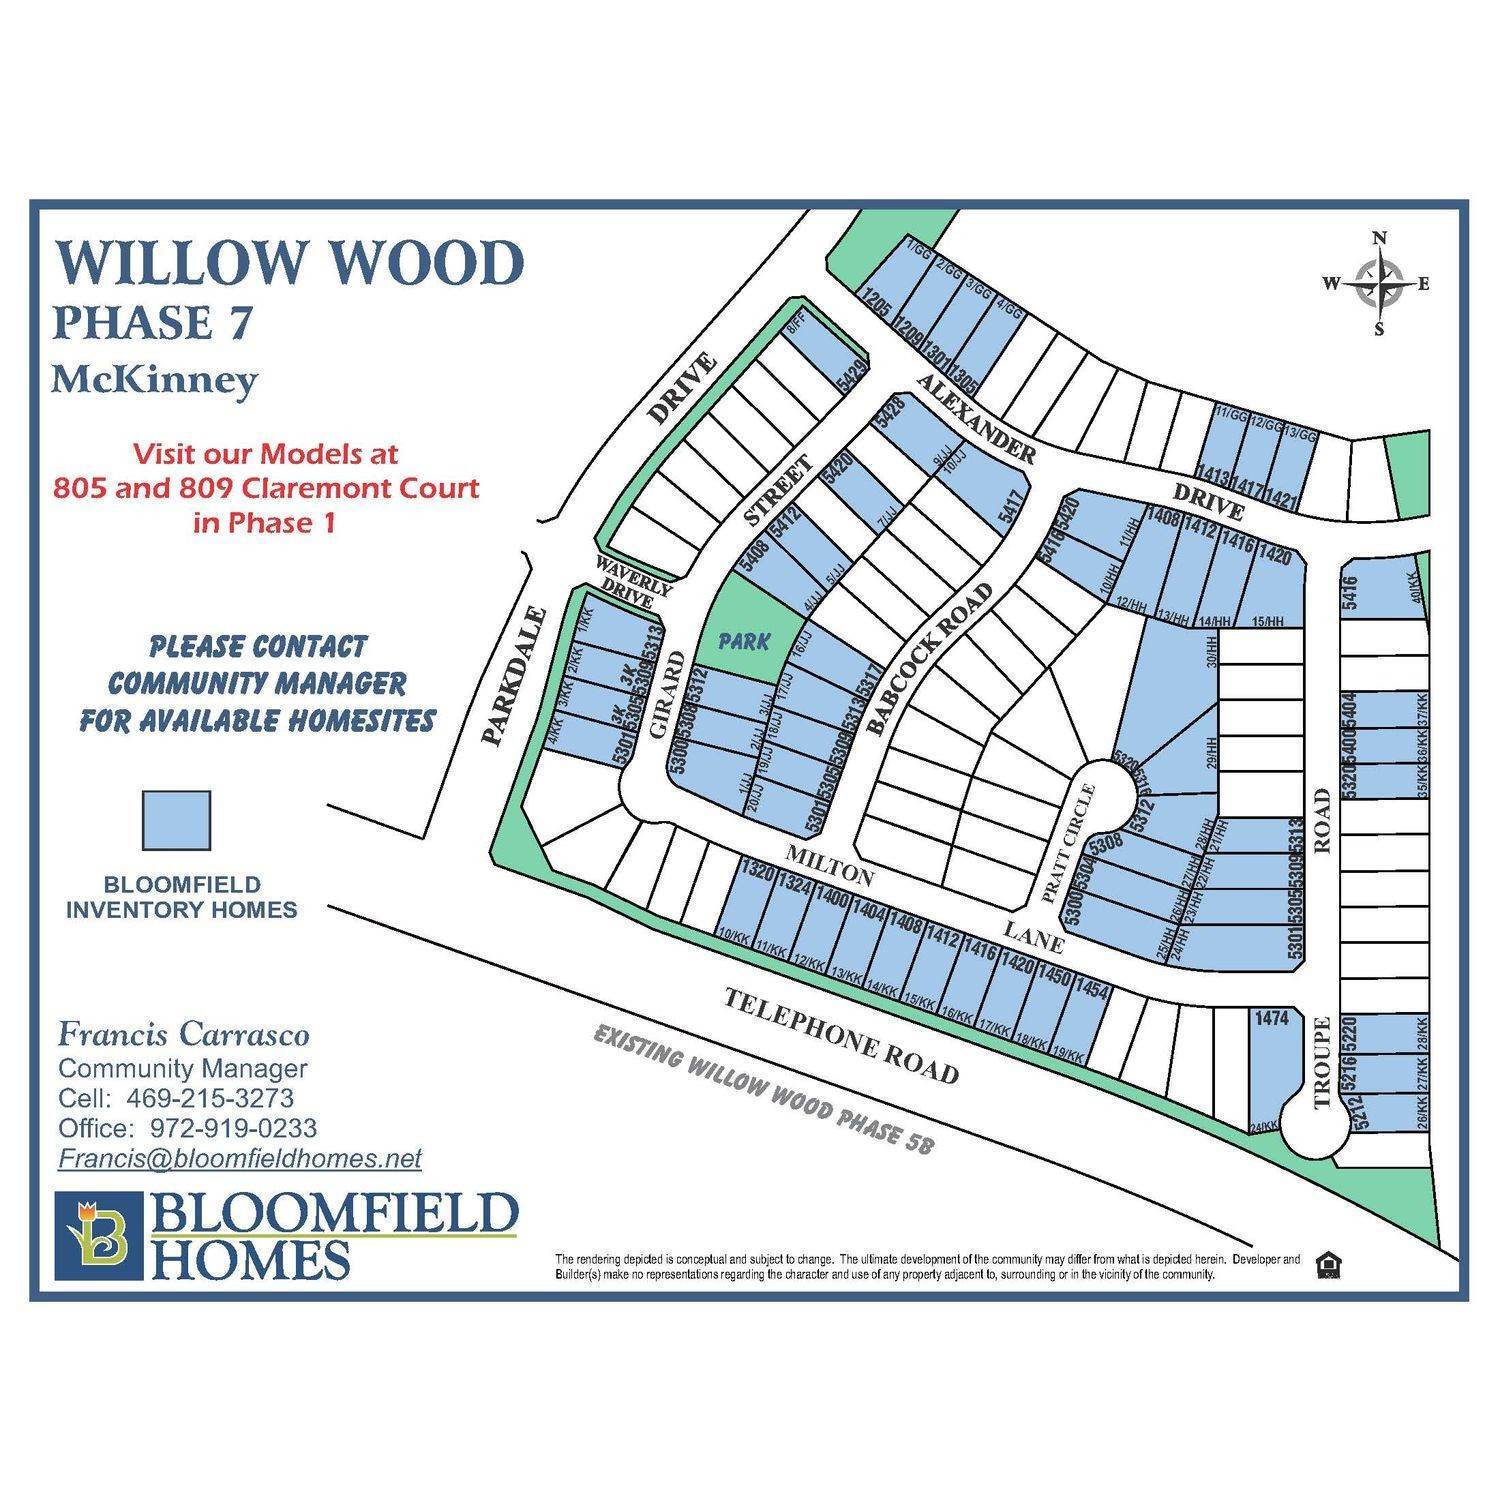 5. Willow Wood Gebäude bei 809 Claremont Court, McKinney, TX 75071